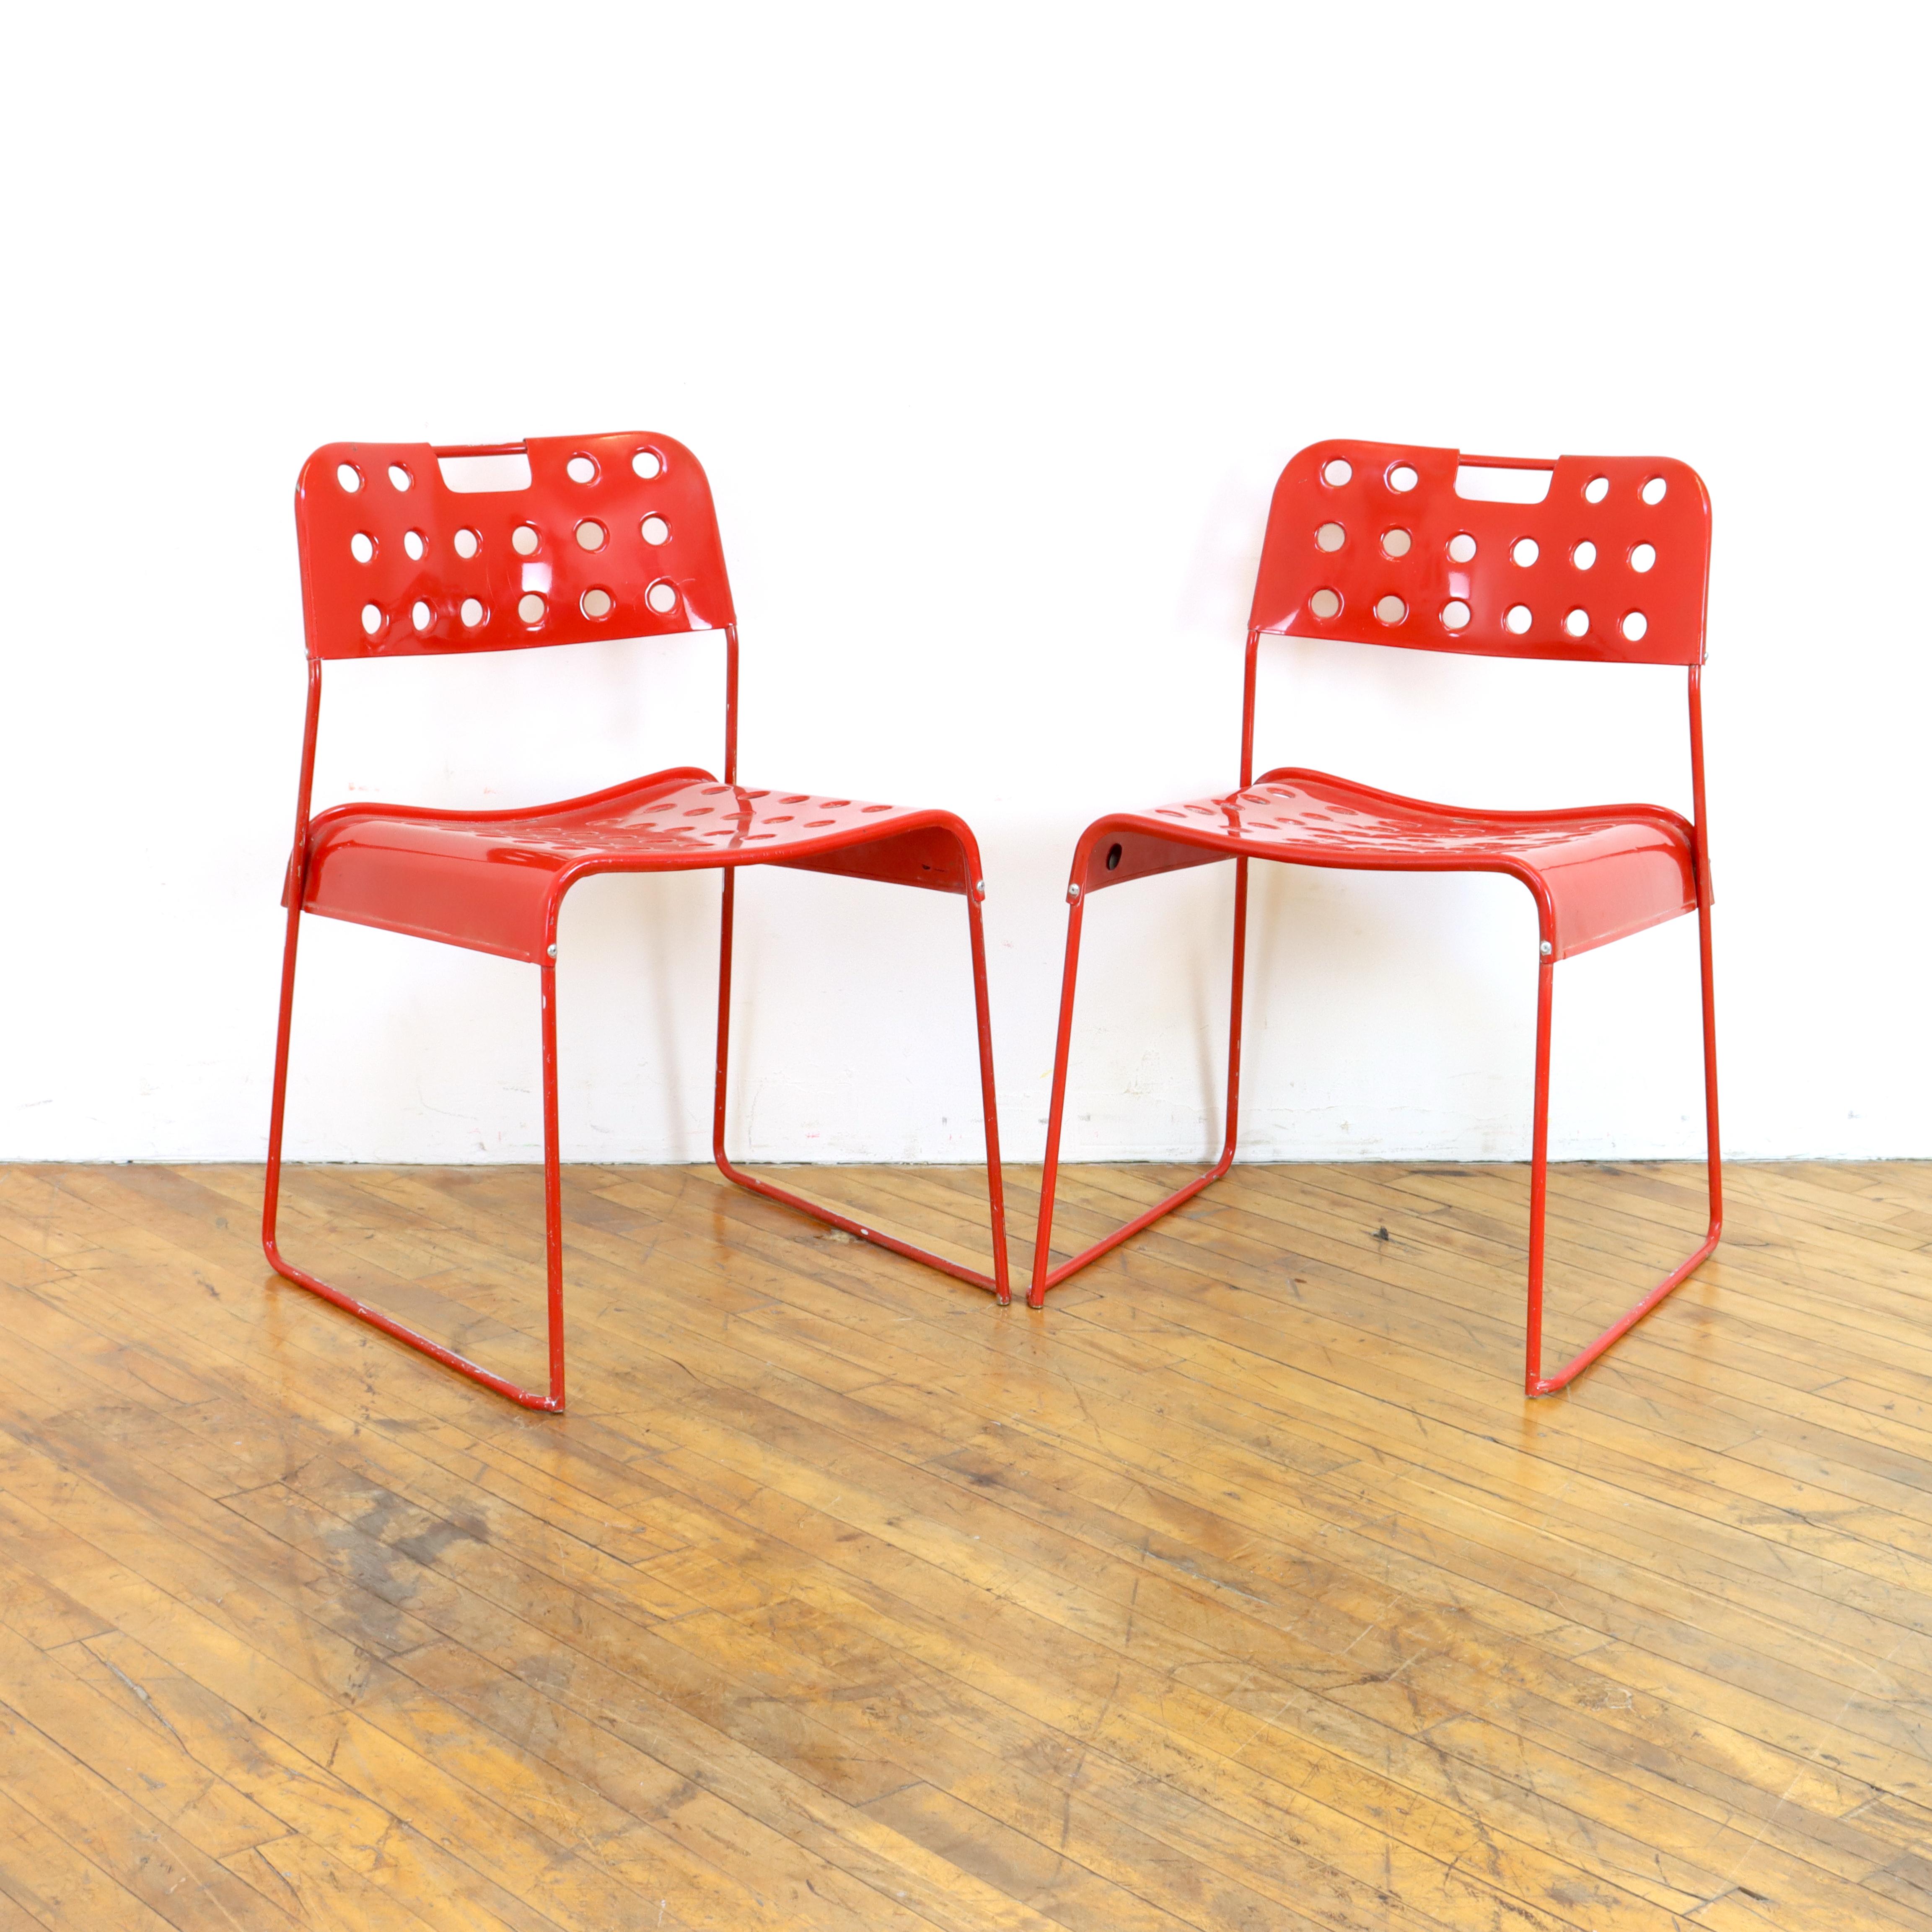 Ein Paar rote Omkstak-Stühle aus den 1970er Jahren von Rodney Kingsman für Bieffeplast. Drahtrahmen und perforiert 
Sitz und Rückenlehne aus Metall, pulverbeschichtet.  Wie der Name schon sagt, lassen sie sich auch stapeln.  Can drinnen oder draußen